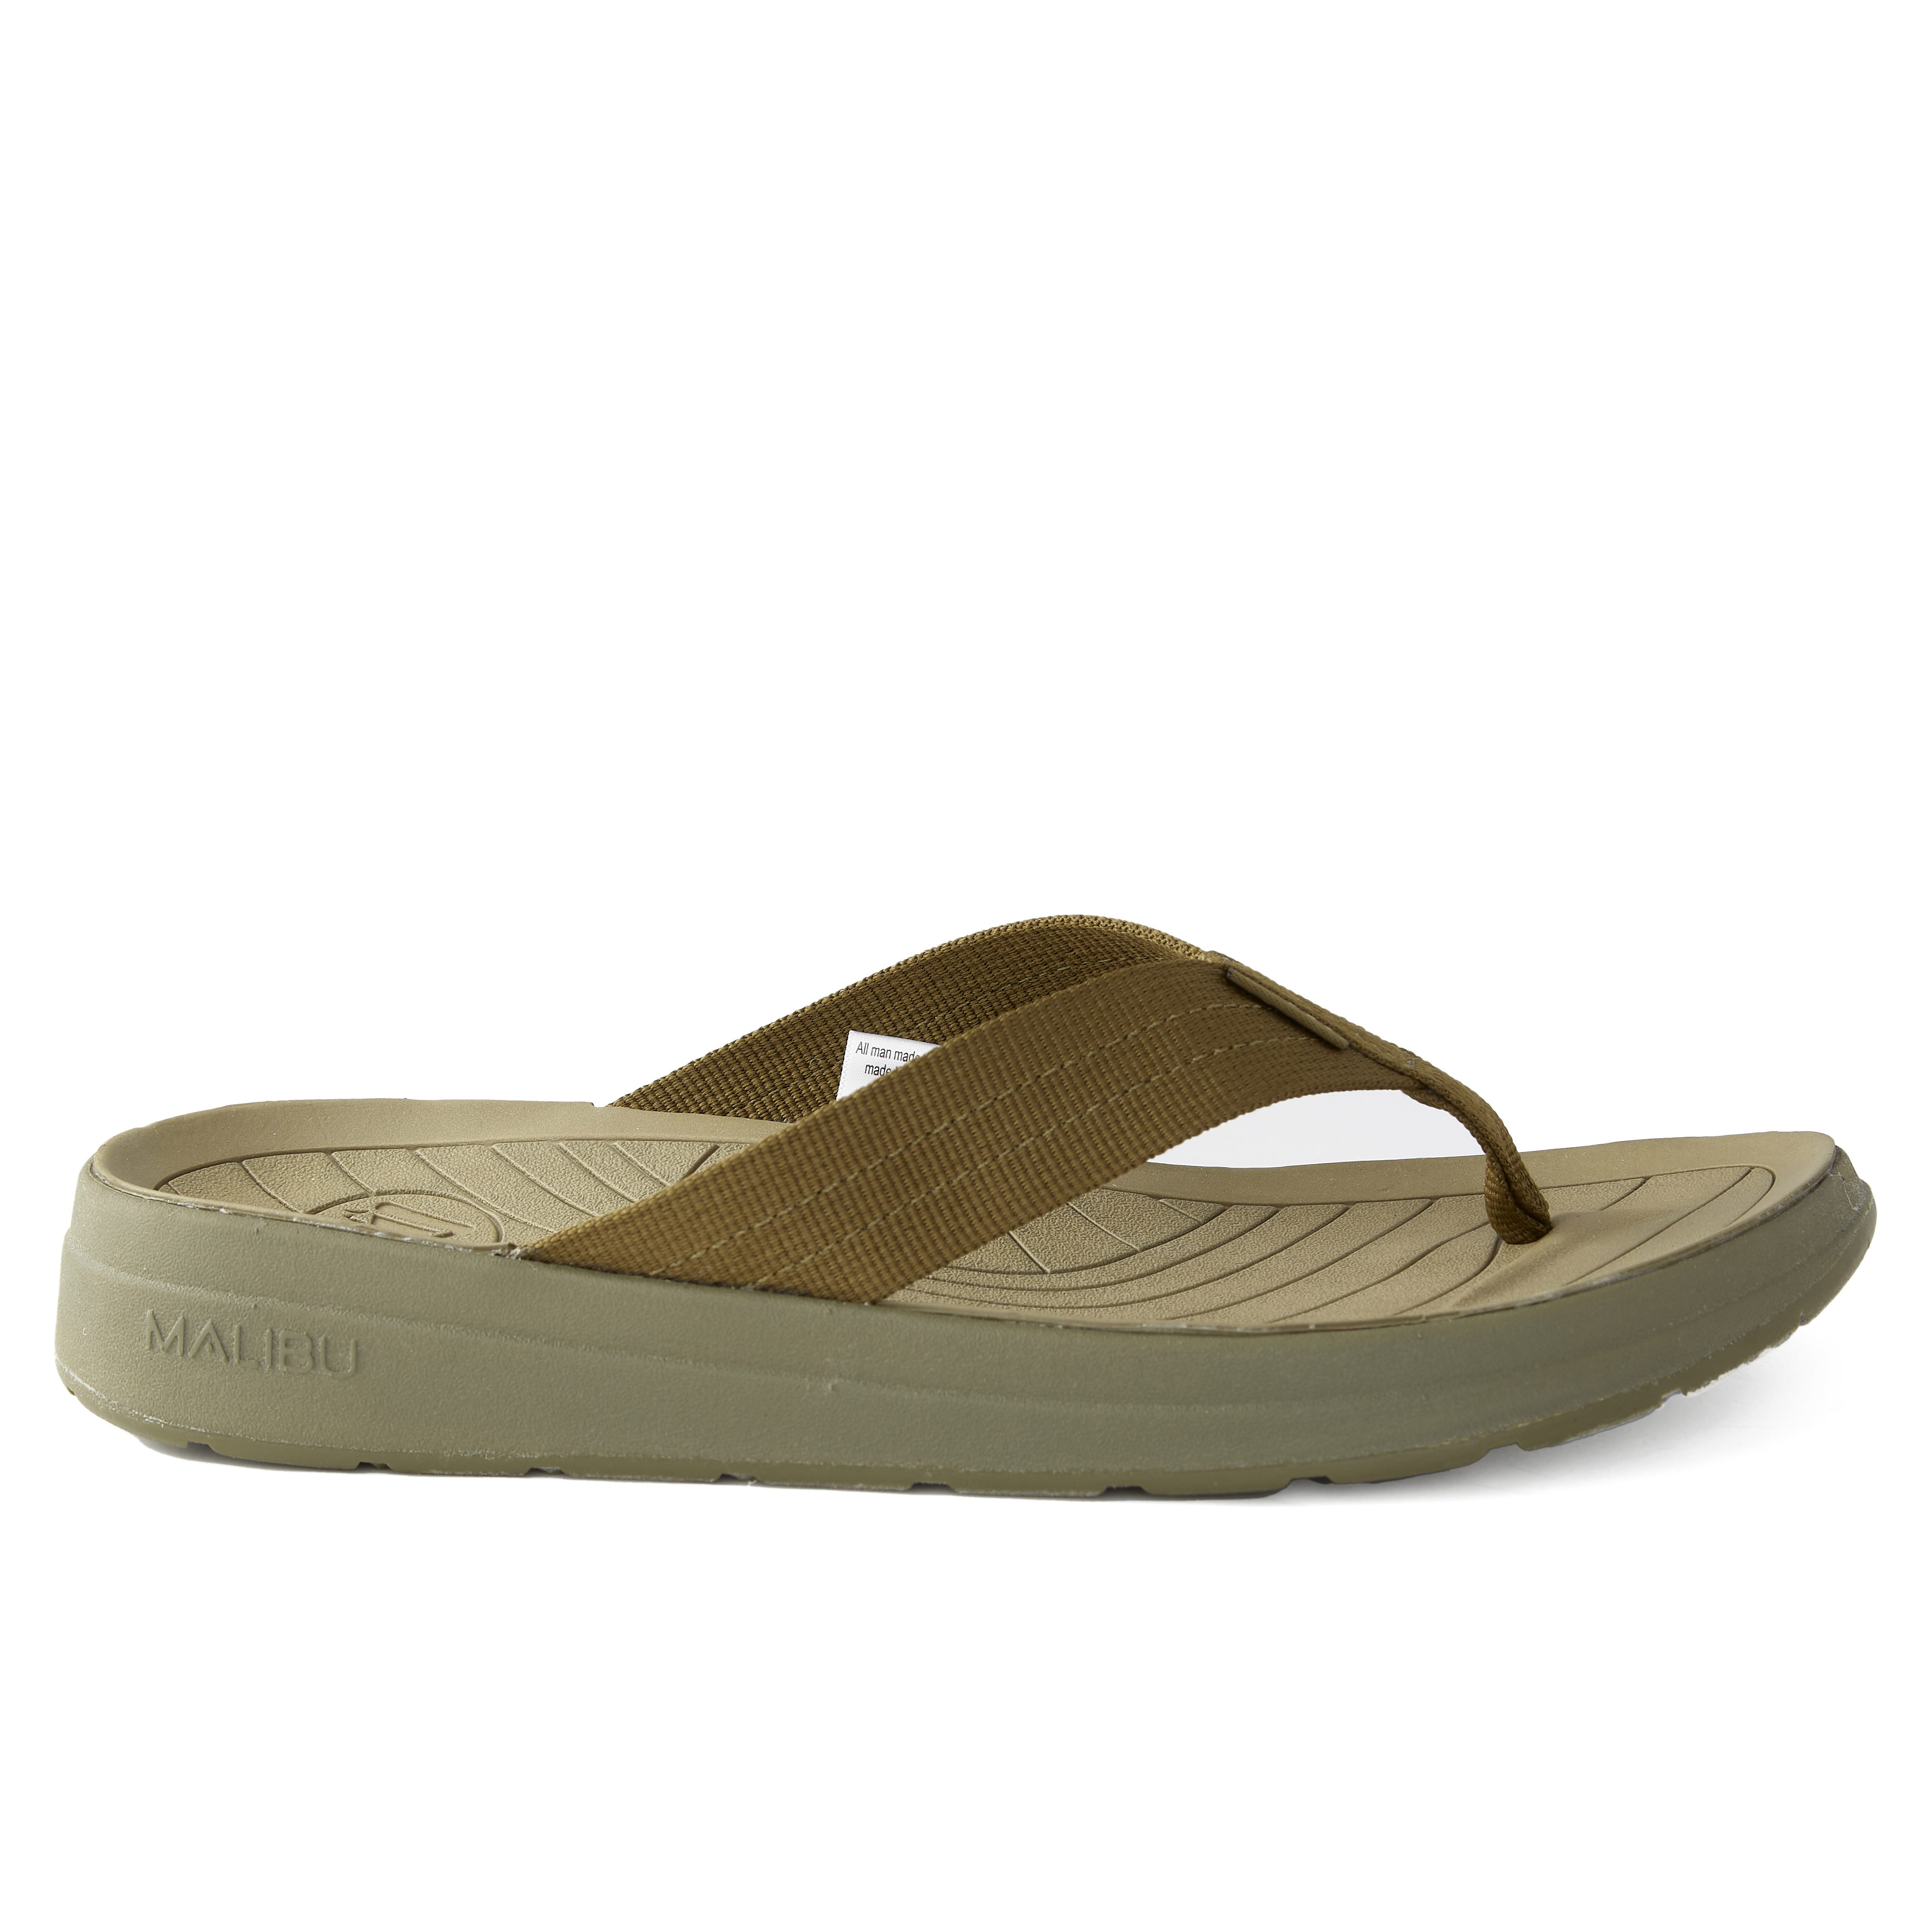 Malibu Surfrider - Olive/Olive | Sandals | Huckberry